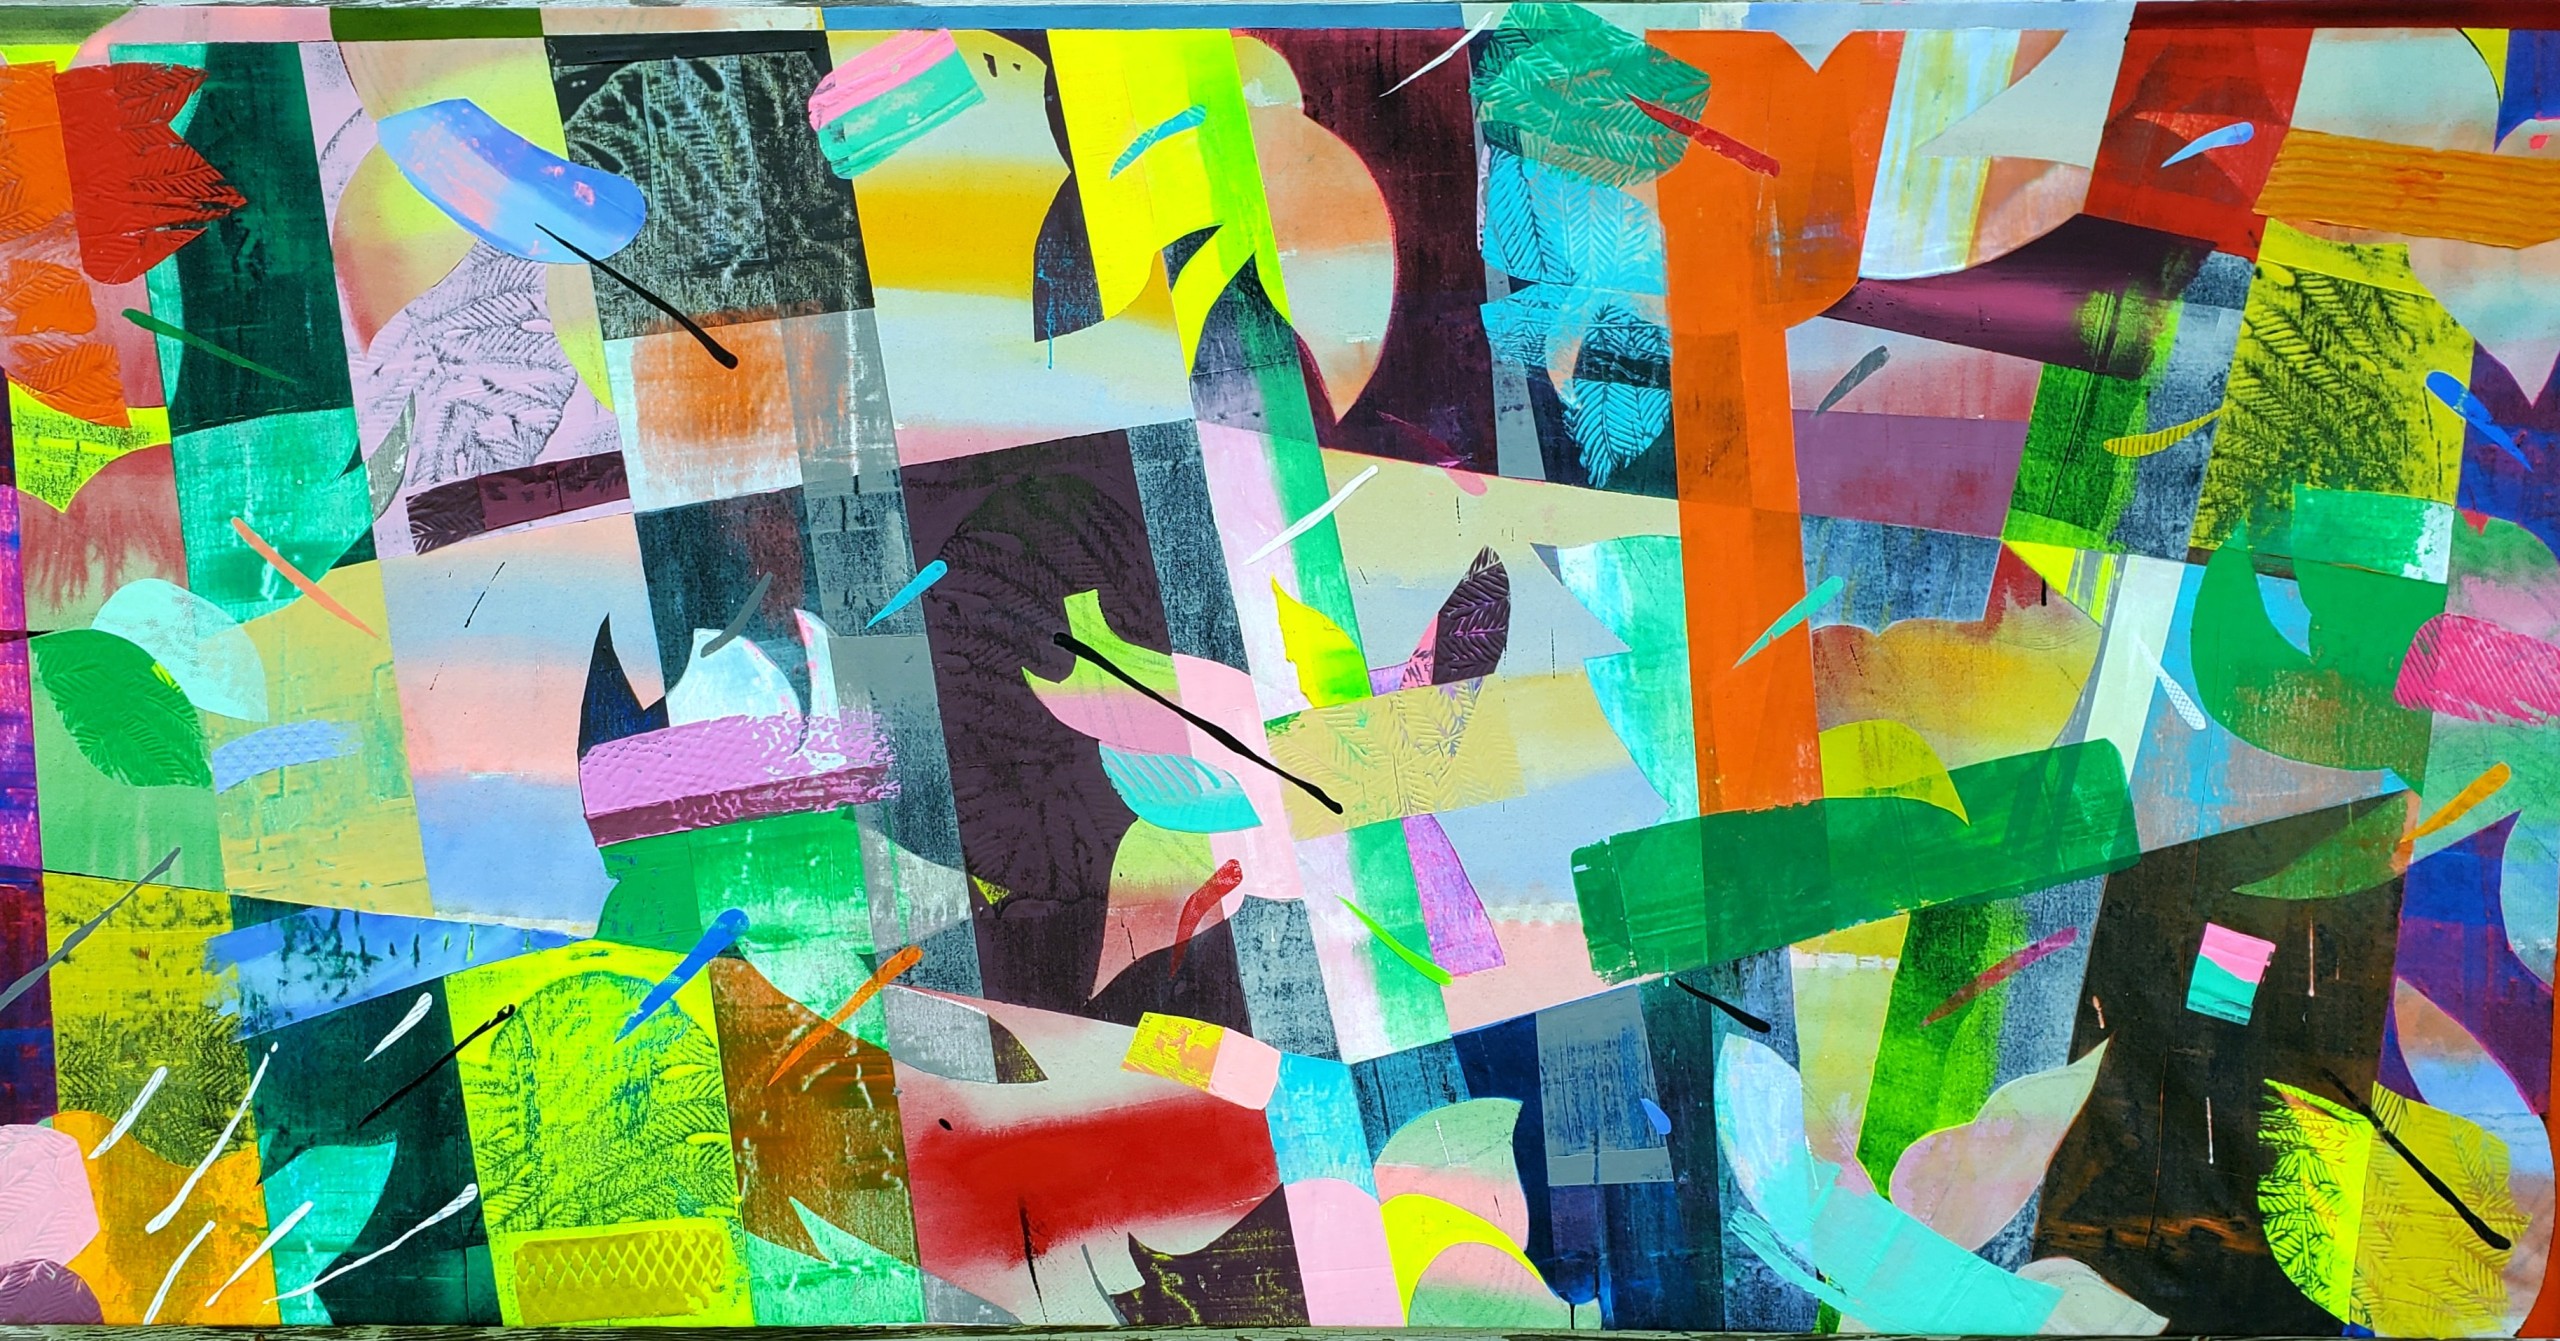 Kevin Kelly, “Crisis Garden,” Acrylic on canvas